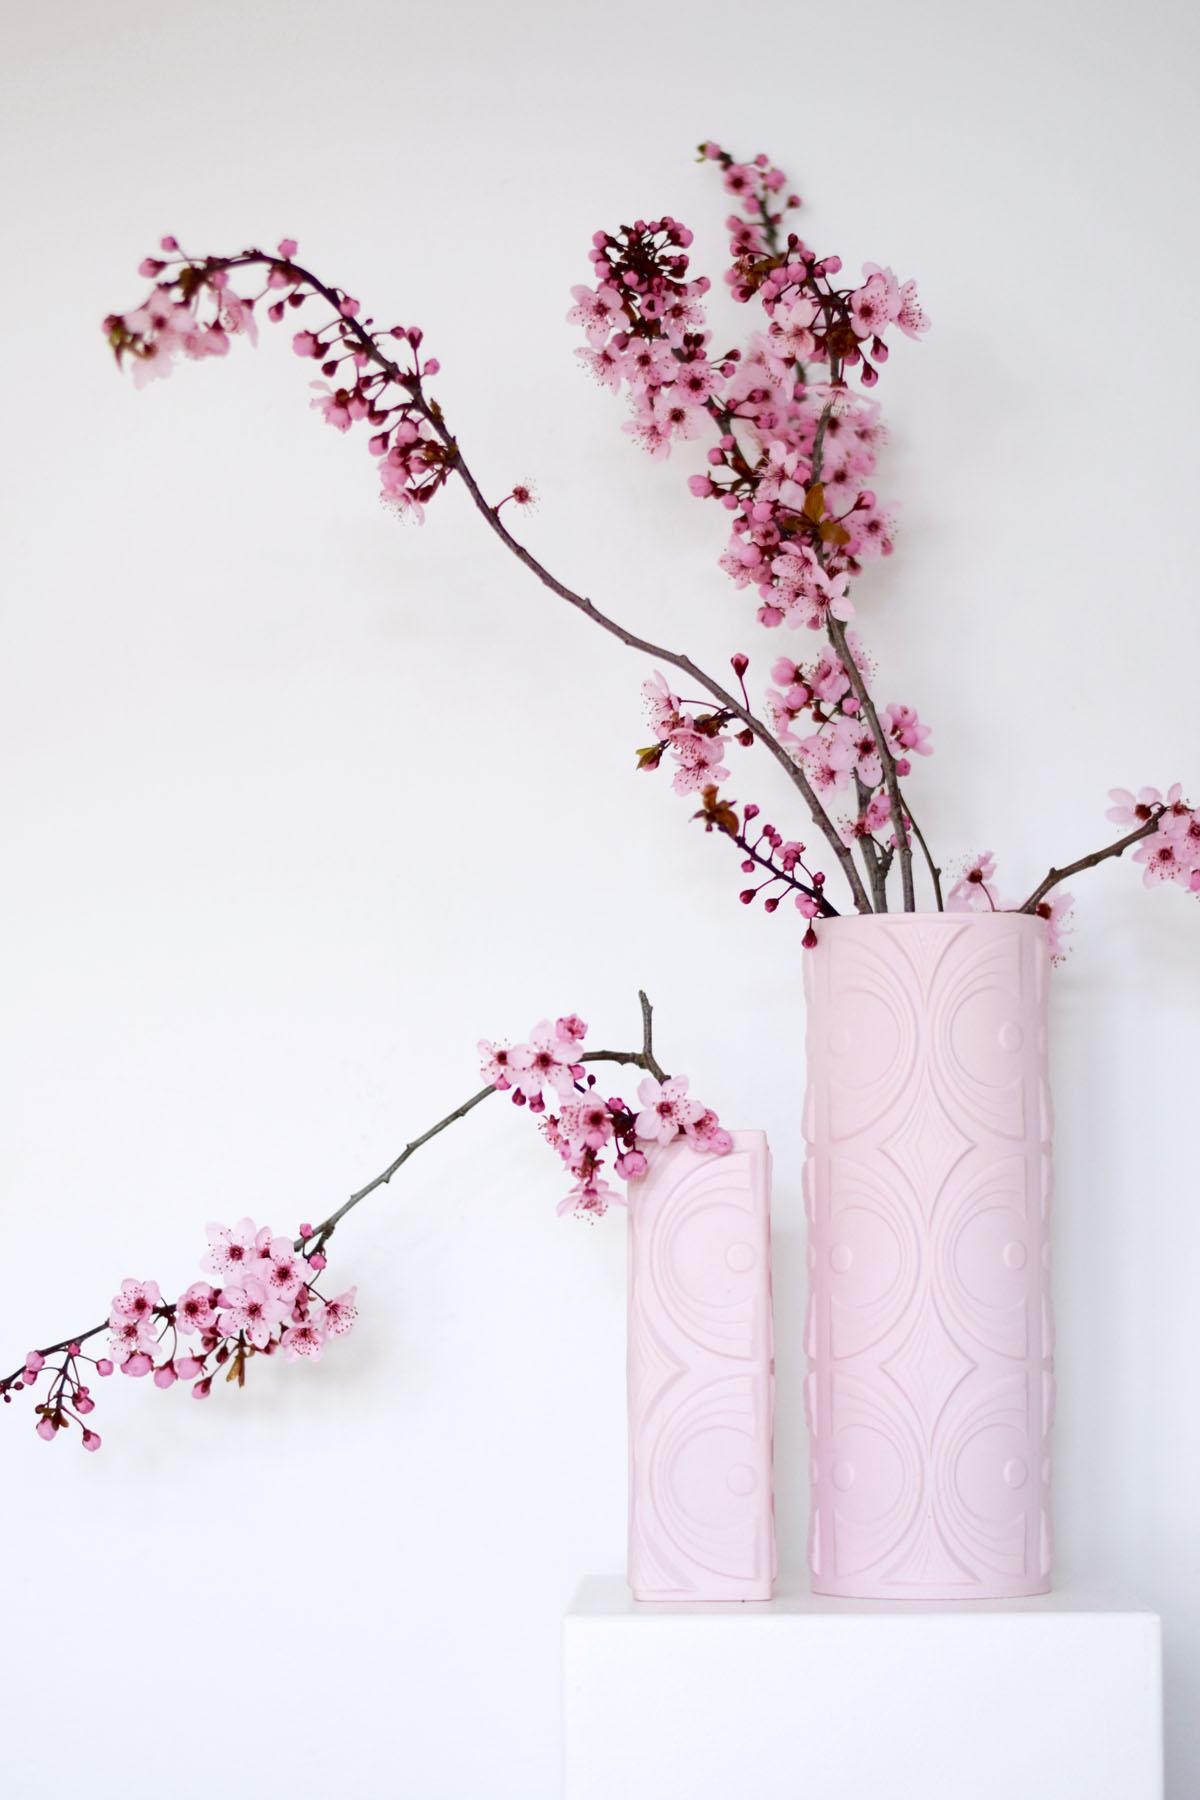 Himbeersofteis-Farben verkünden den Frühling... meine liebste Jahreszeit!
#blumen #flowers #biskuitporzellan #vintage